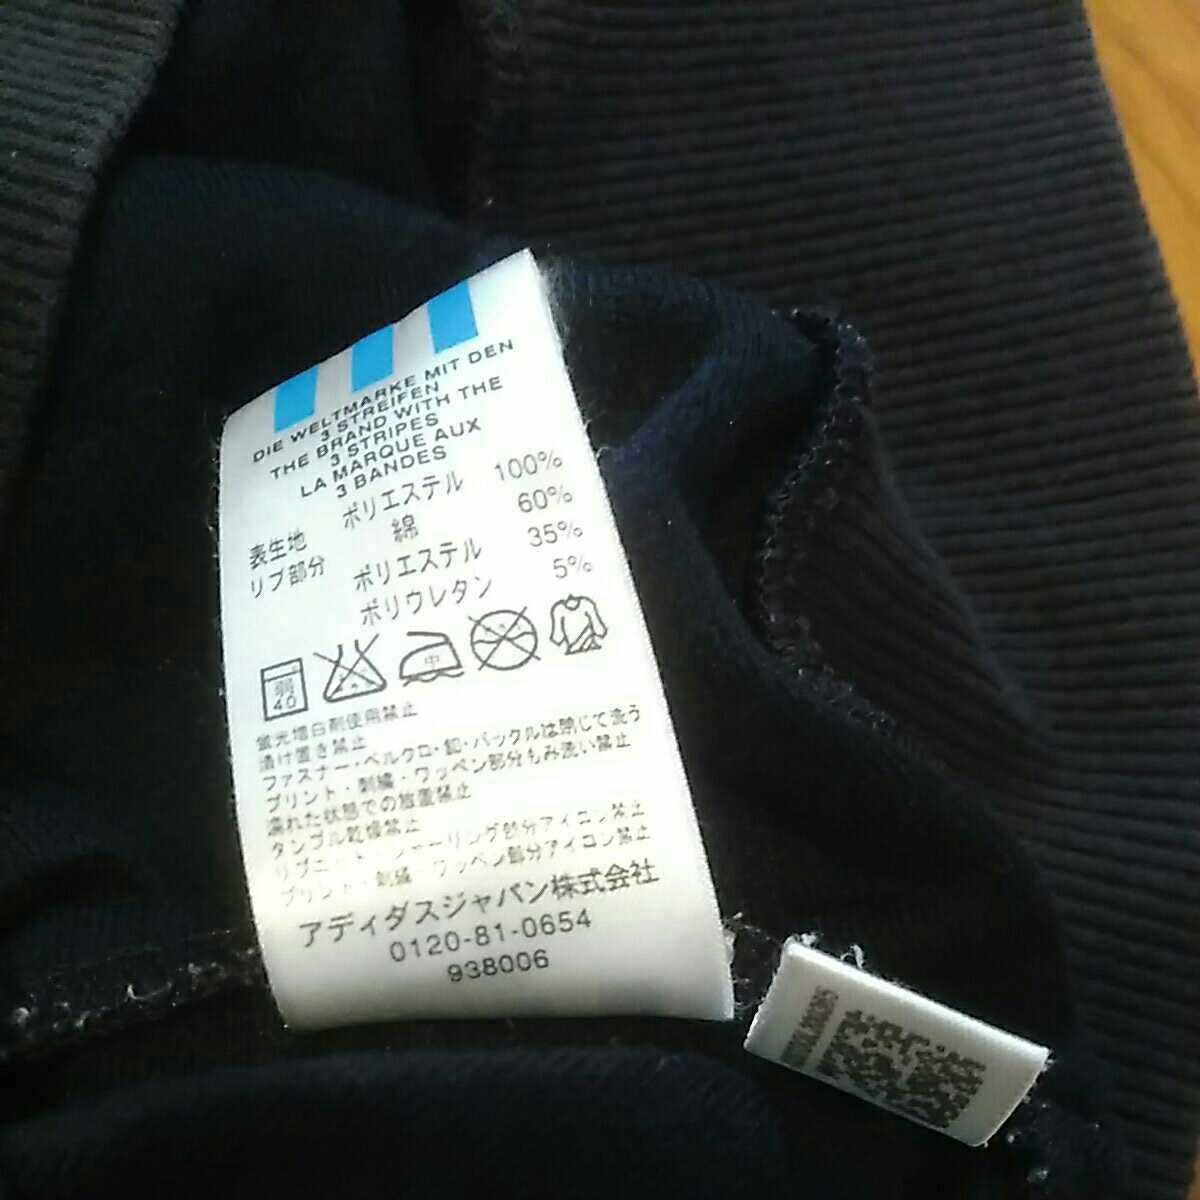 貴重 入手困難 復刻 アディダス Adidas トラッカージャケット ジャージ M レトロ アメカジ Oi Punk Skins Mods スキンズ モッズ パンク Buyee Buyee Japanischer Proxy Service Kaufen Sie Aus Japan